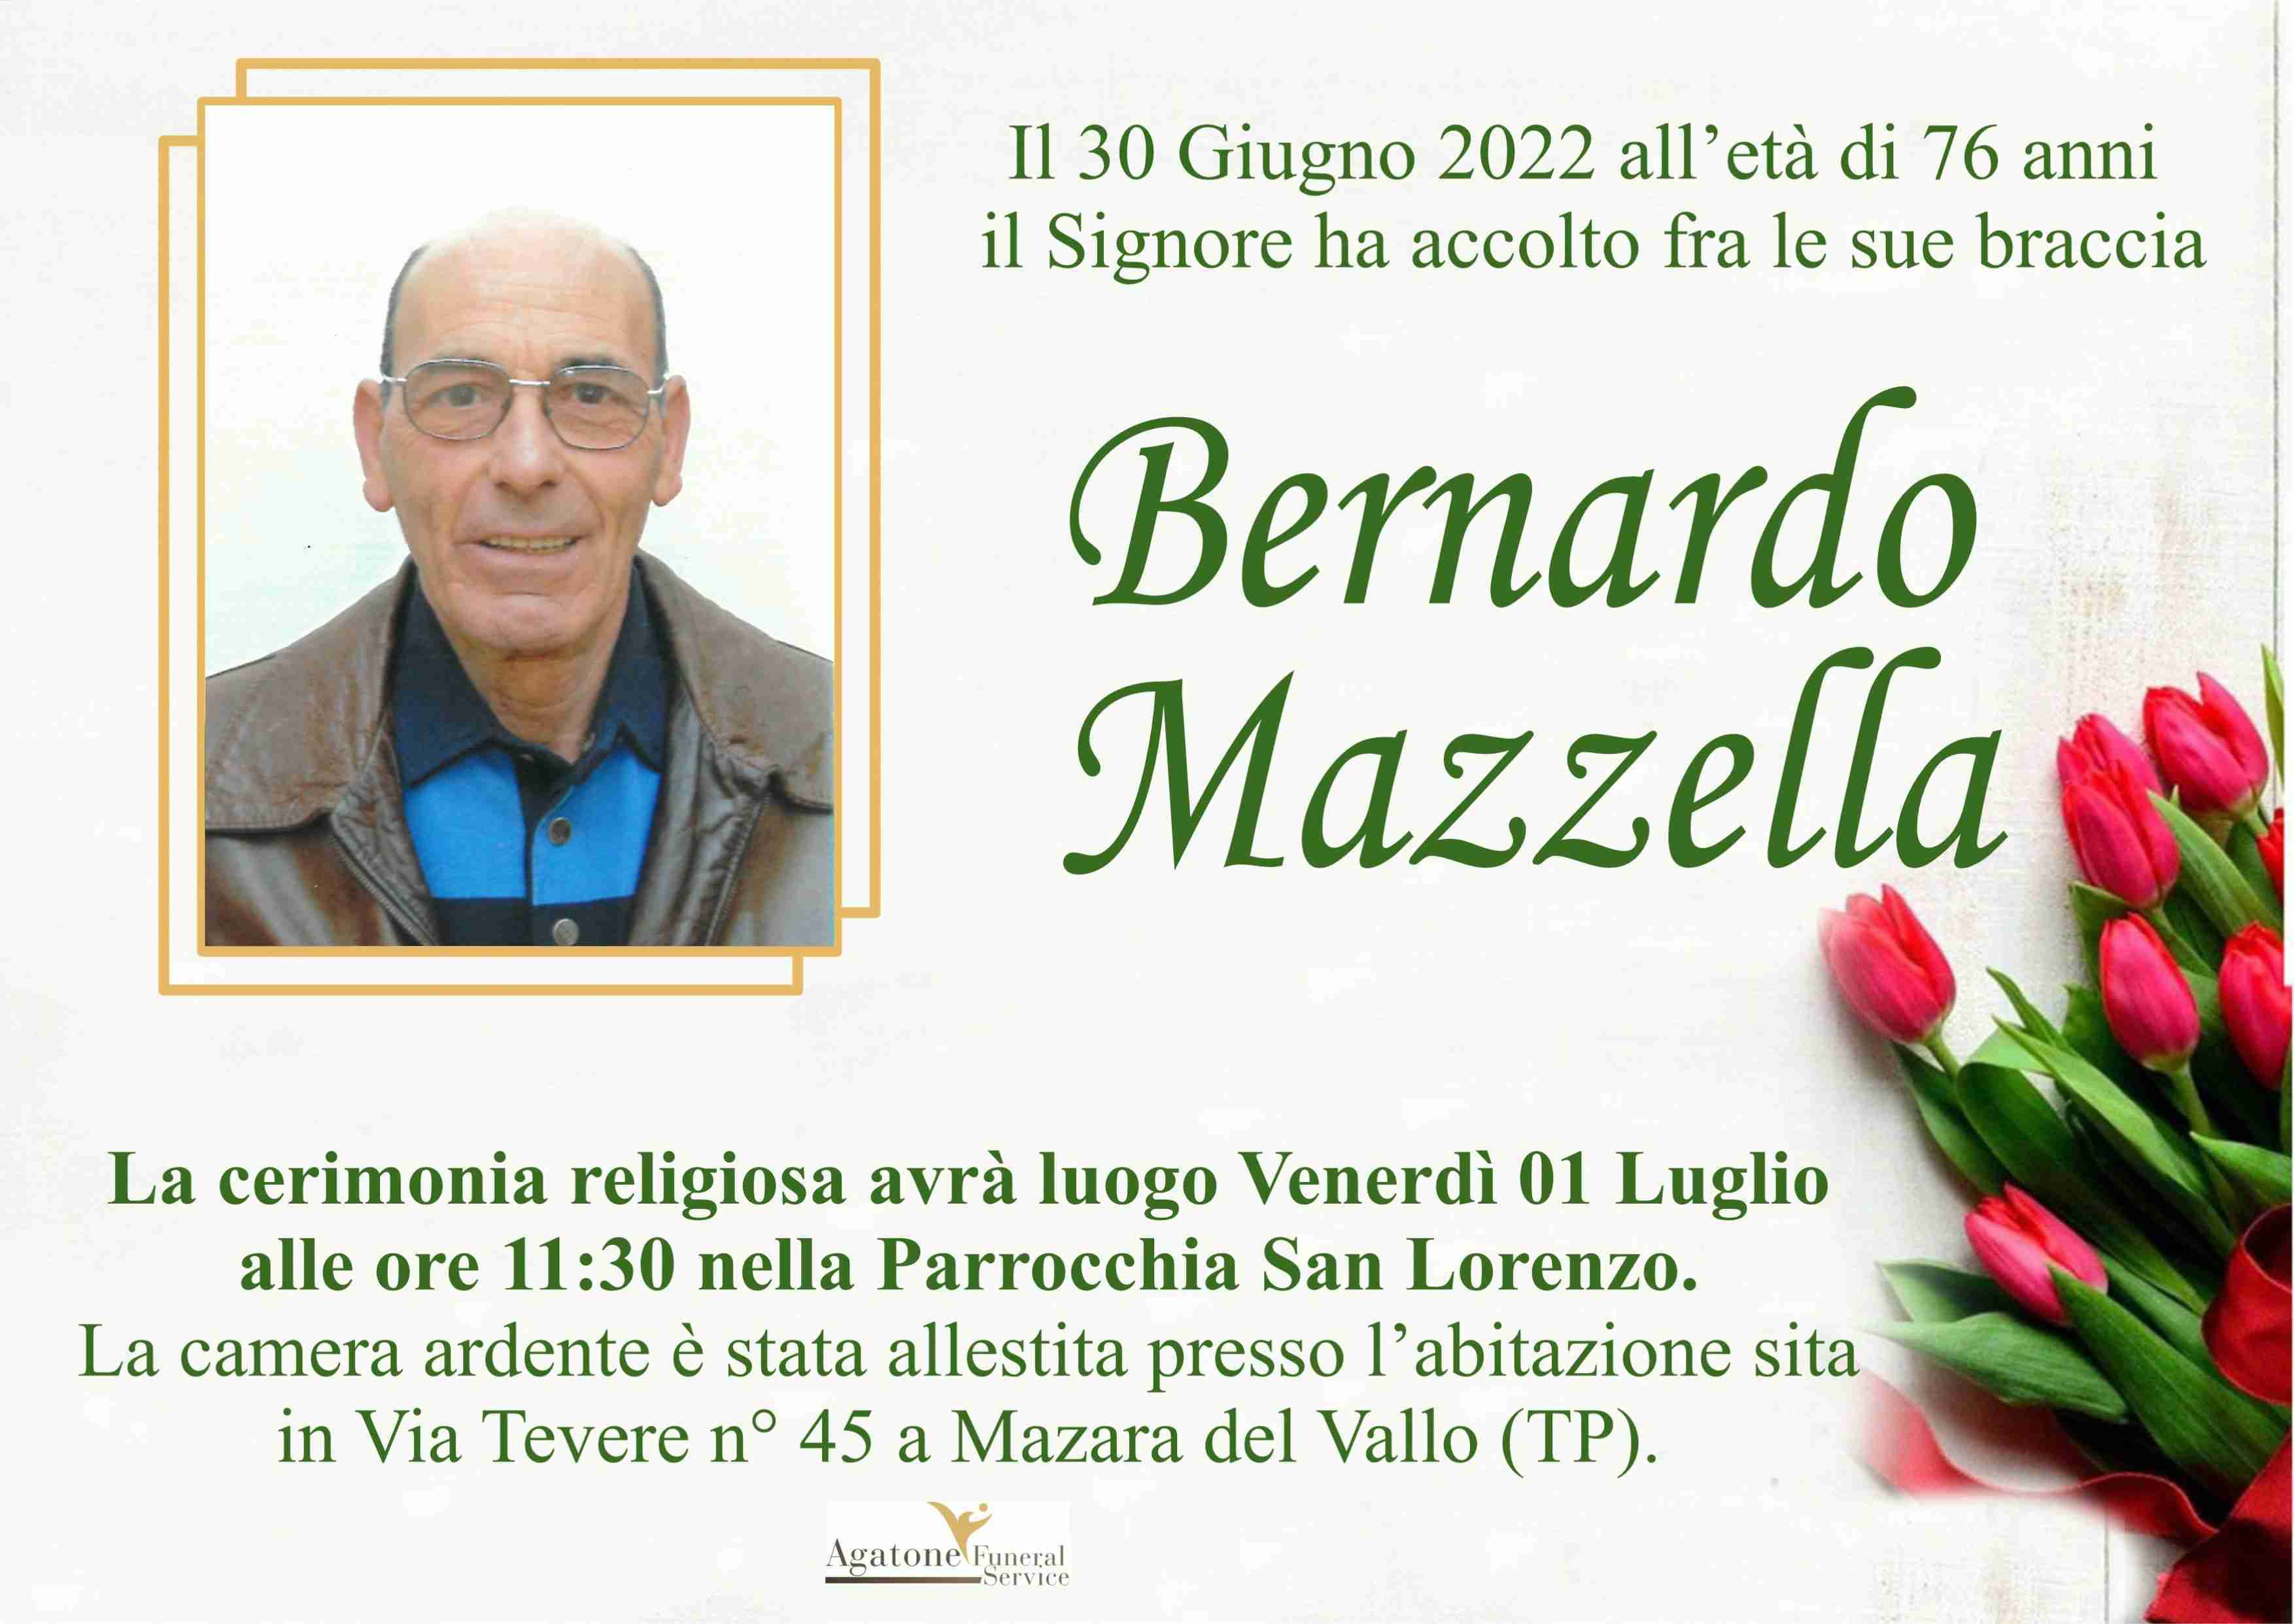 Bernardo Mazzella